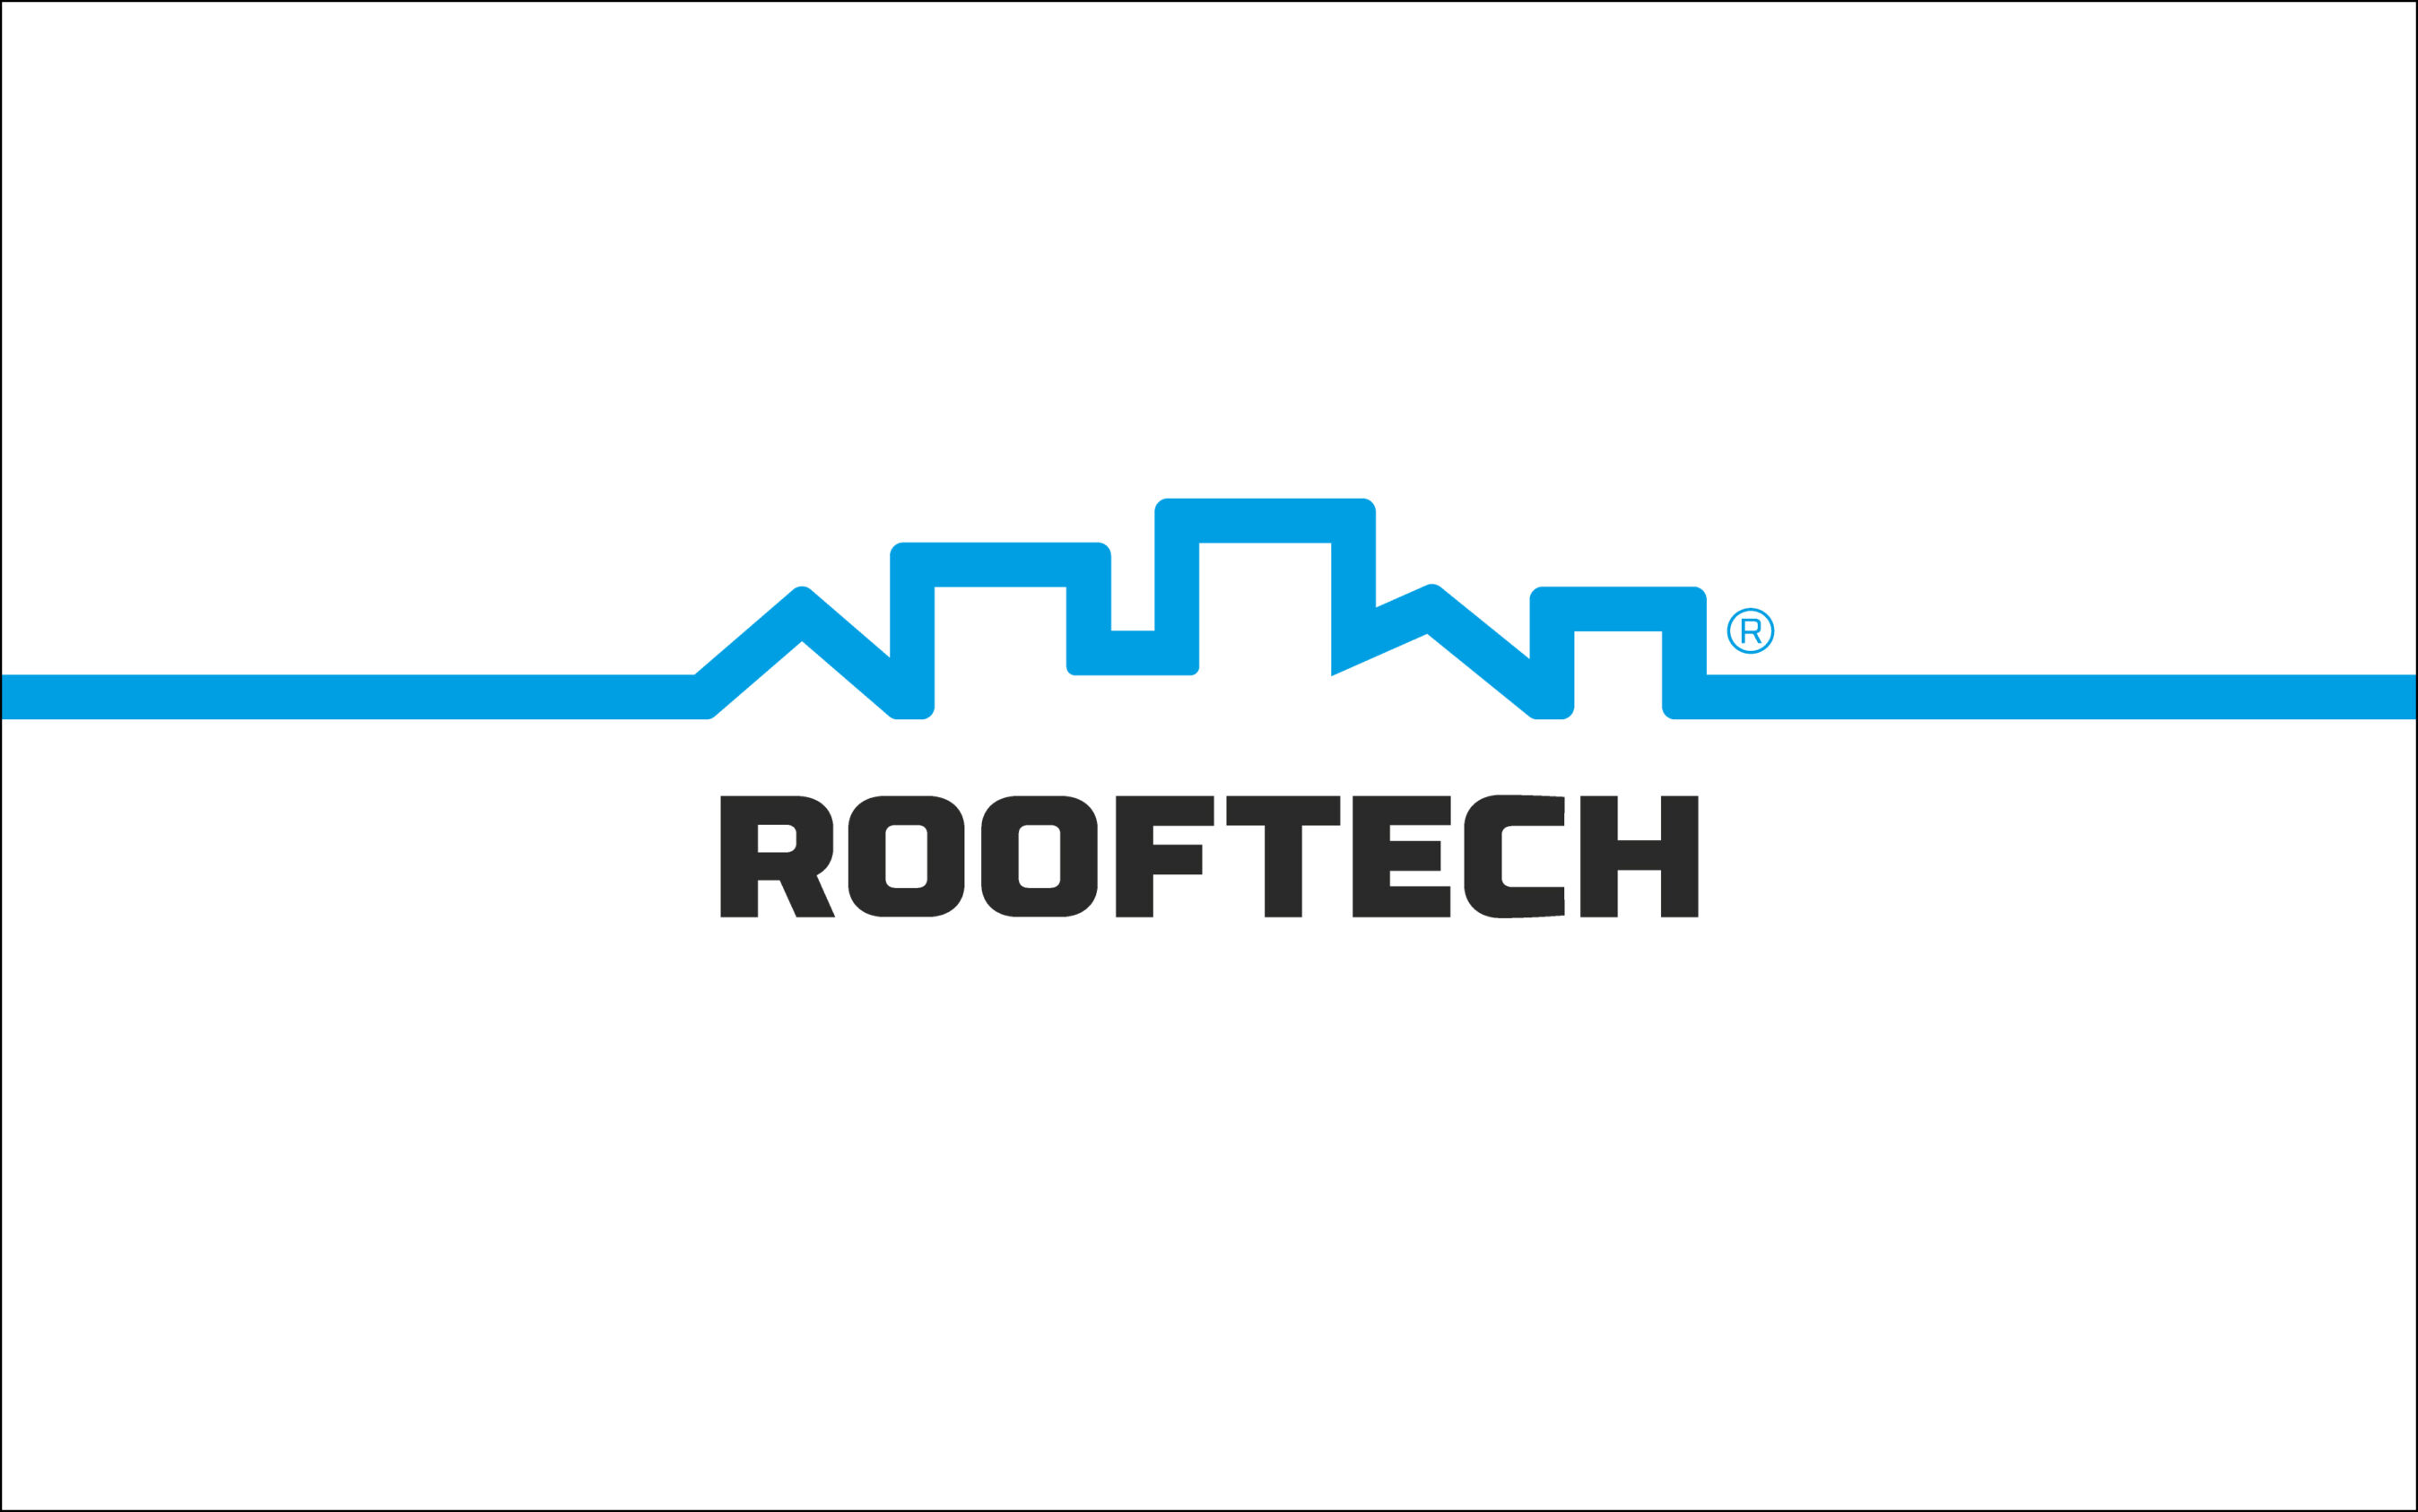 Firmen-Logo als Hauptelement des Brandings Corporate Designs der Firma Rooftech AG. Blaue Linie formt eine Skyline, die Wortmarke unten in schwarz mit einer kräftigen, technischer Schrift.